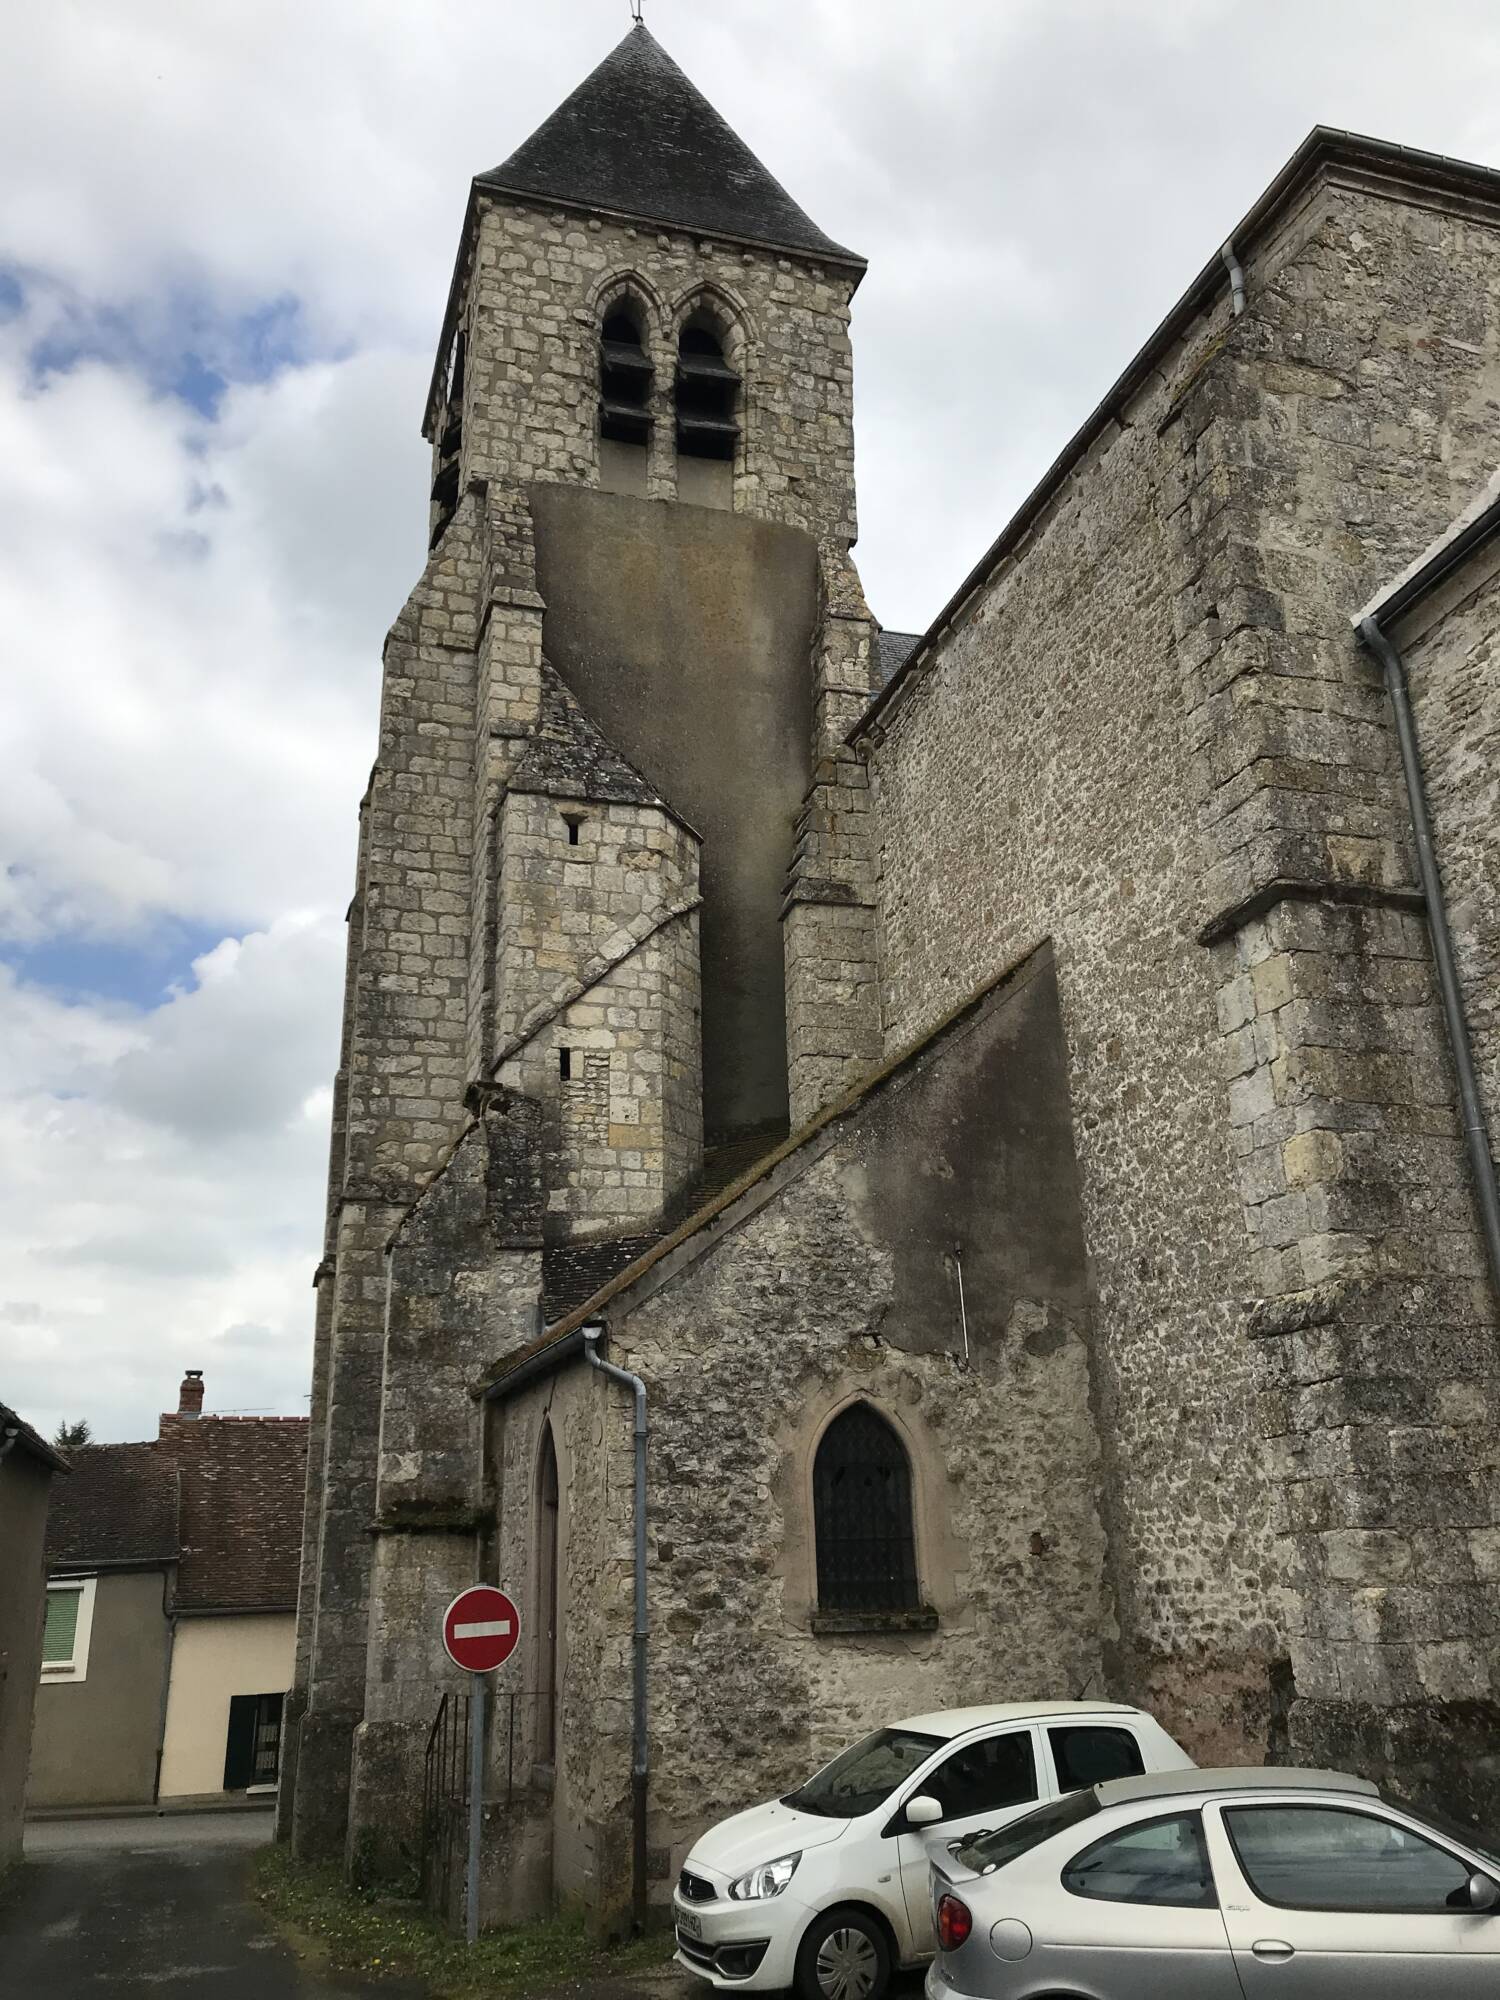 Briarres-sur-Essonne (45) - Église Saint-Étienne